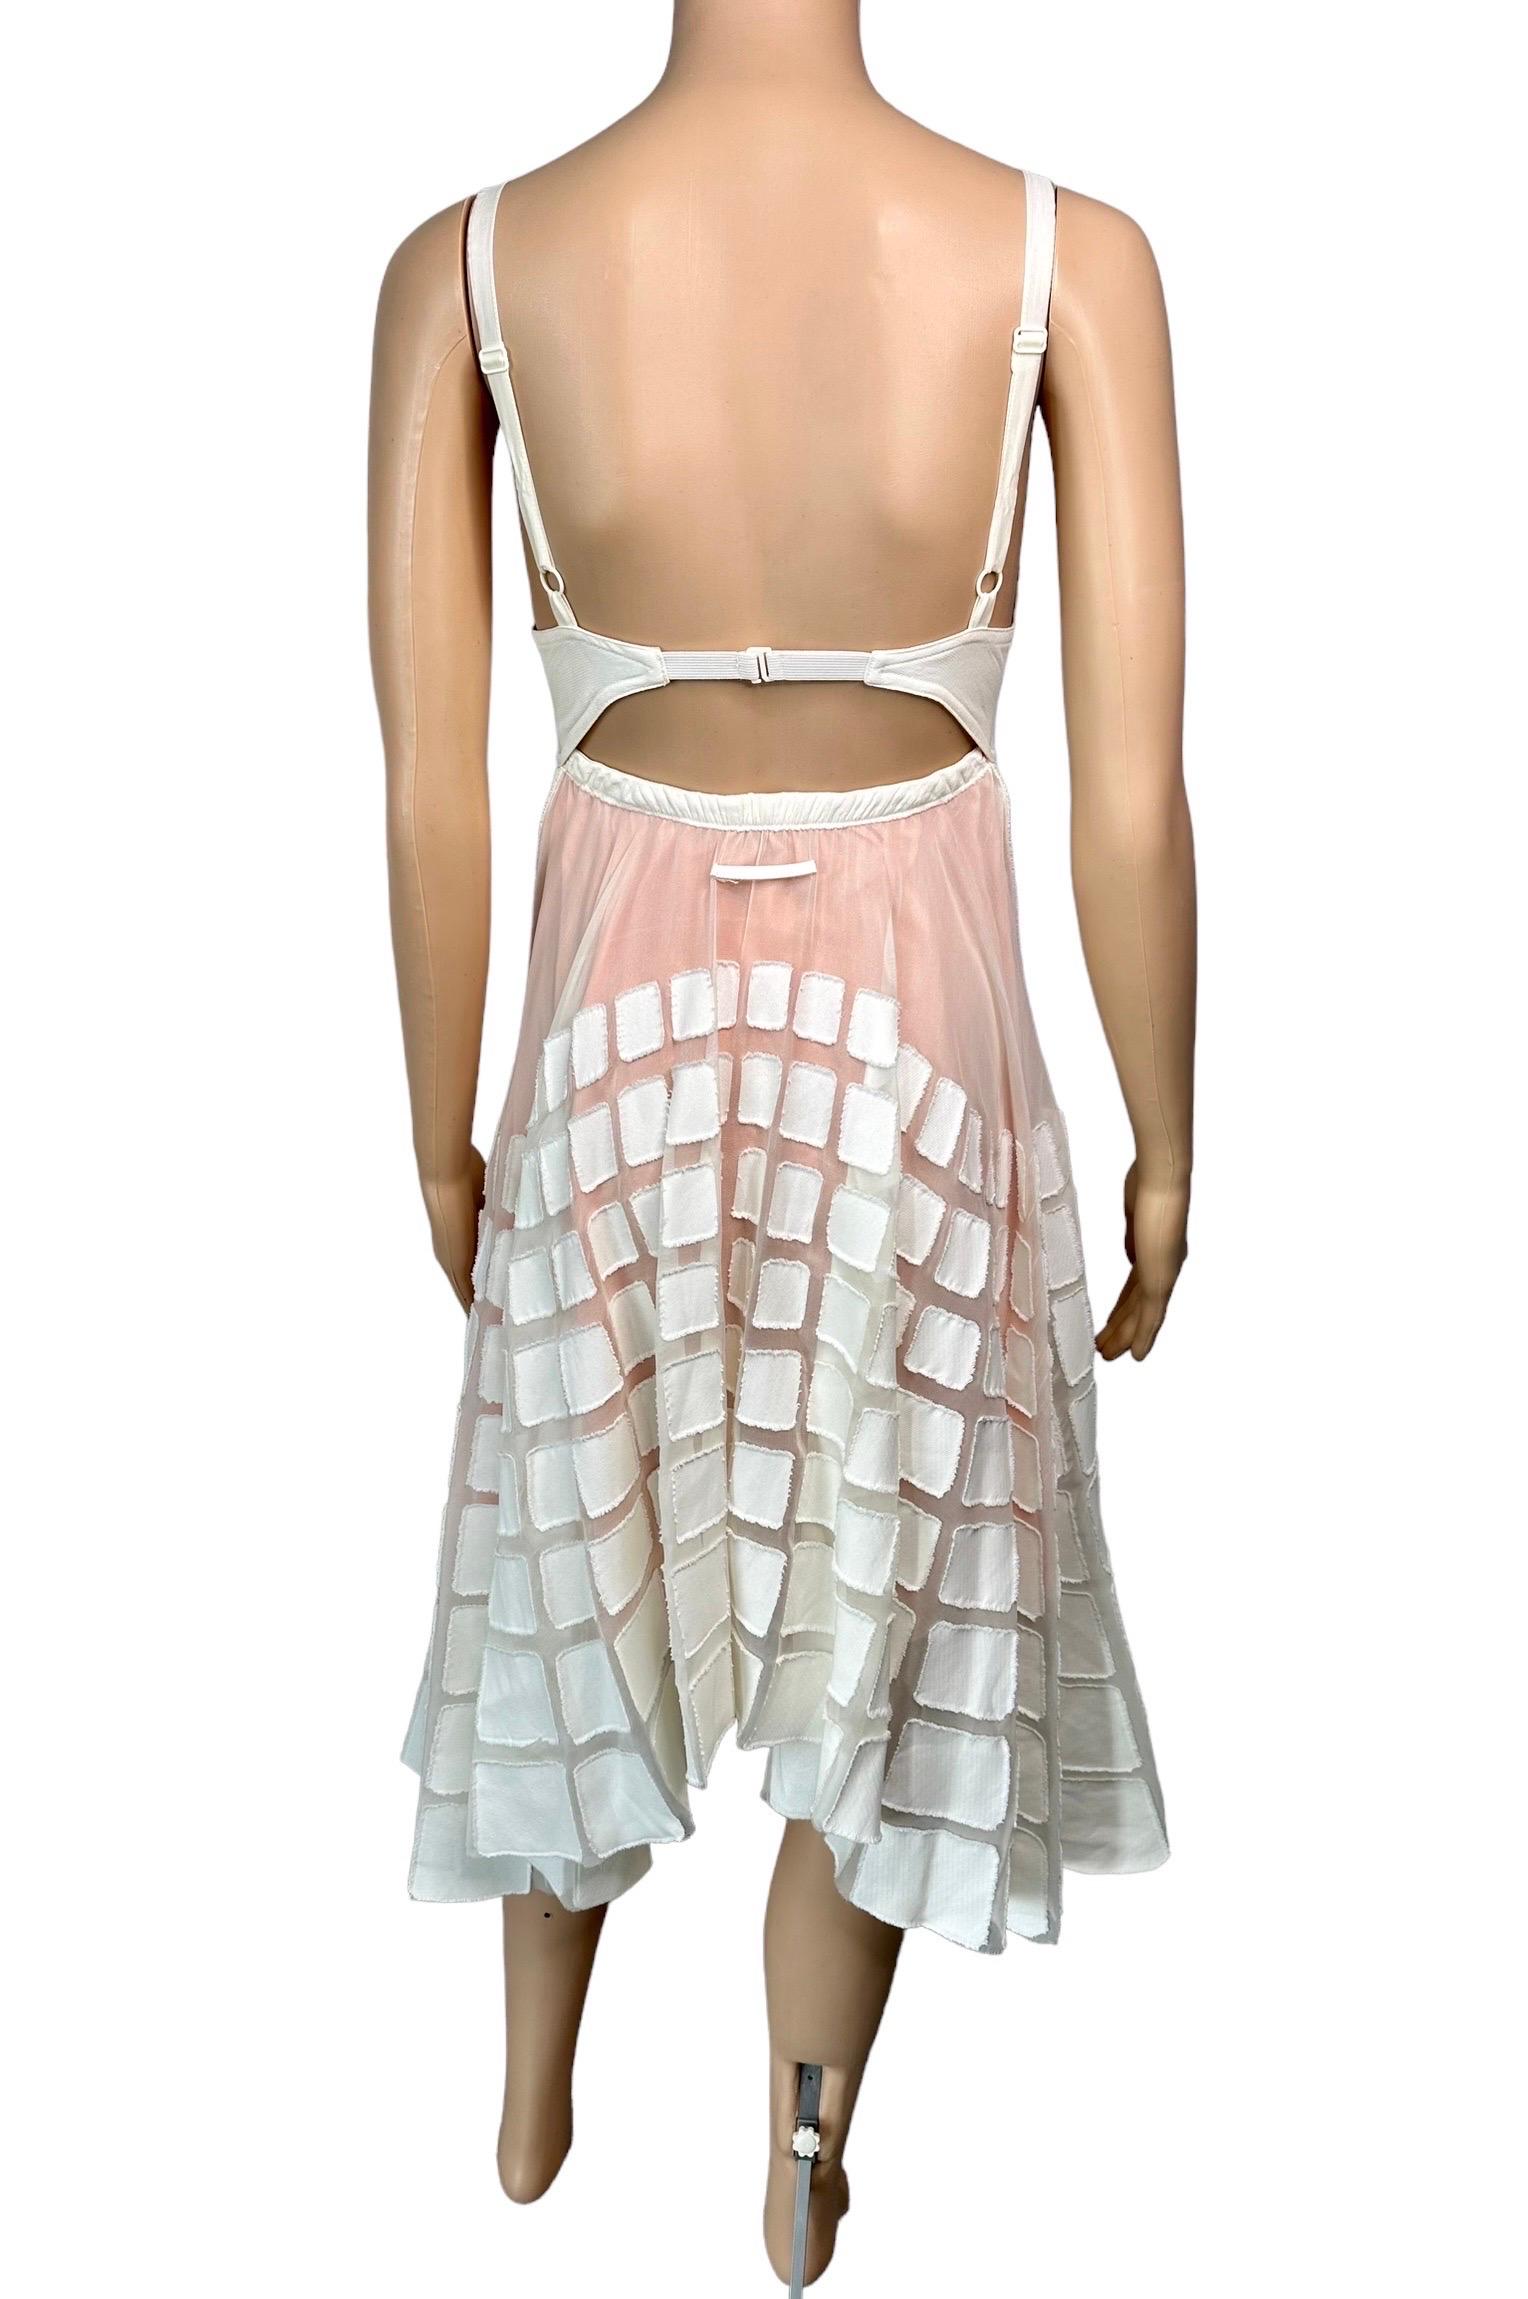 Jean Paul Gaultier S/S 2010 Runway Cone Bra Bustier Cutout Sheer Dress  For Sale 9